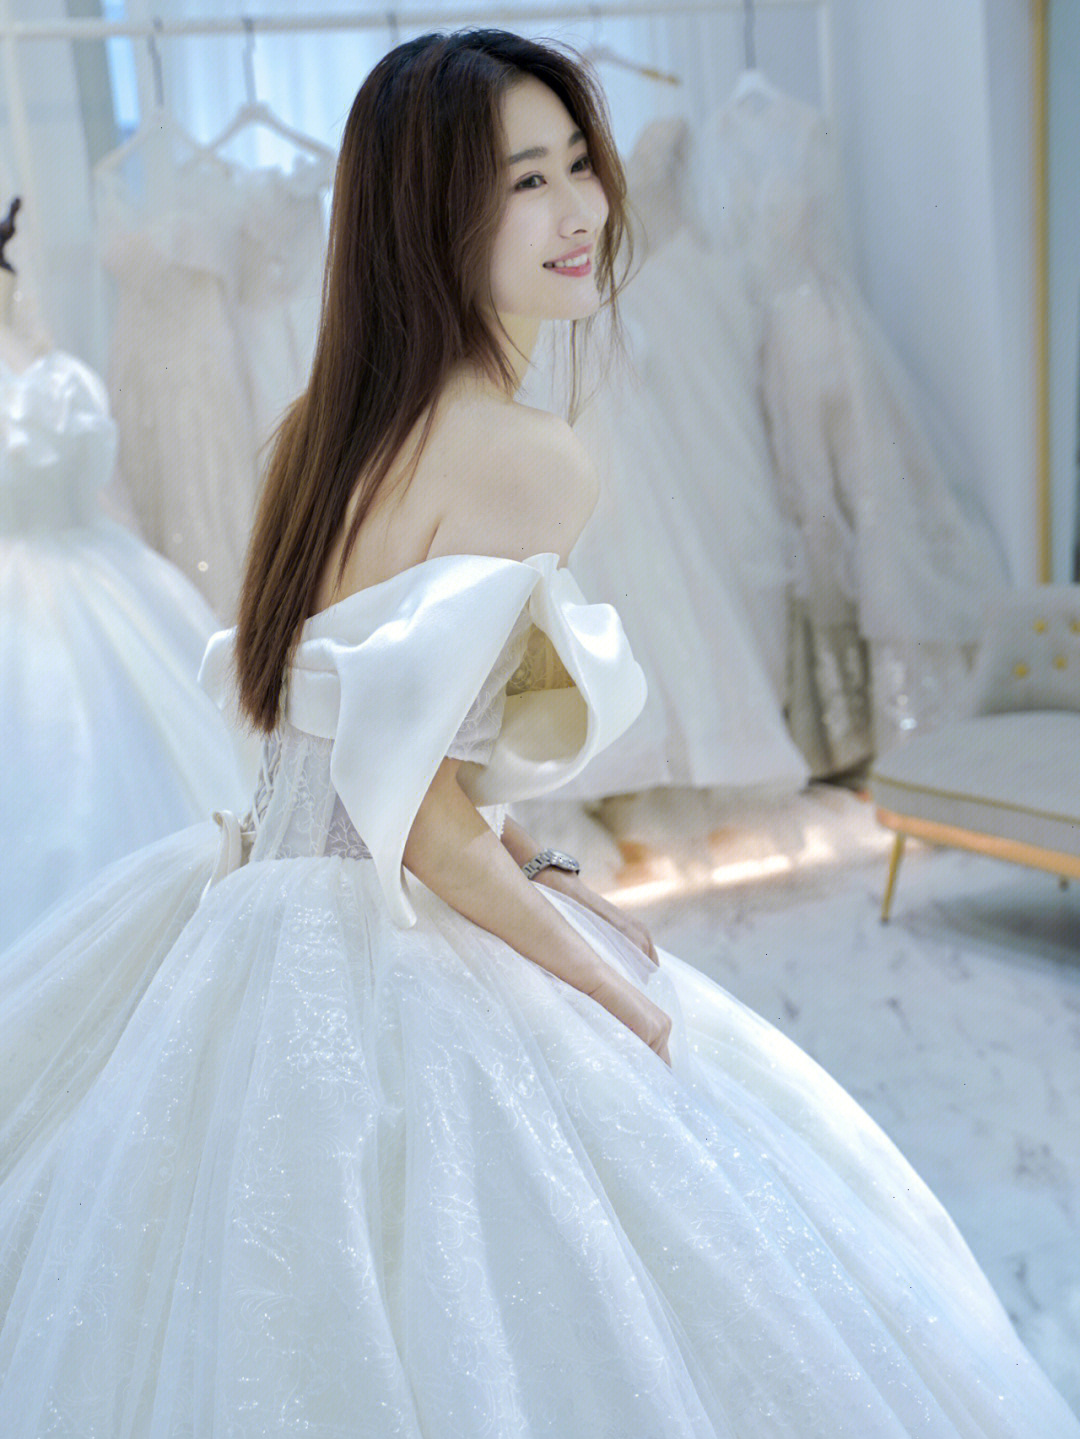 那惊鸿一瞥的惊艳甜美韩式新娘主婚纱